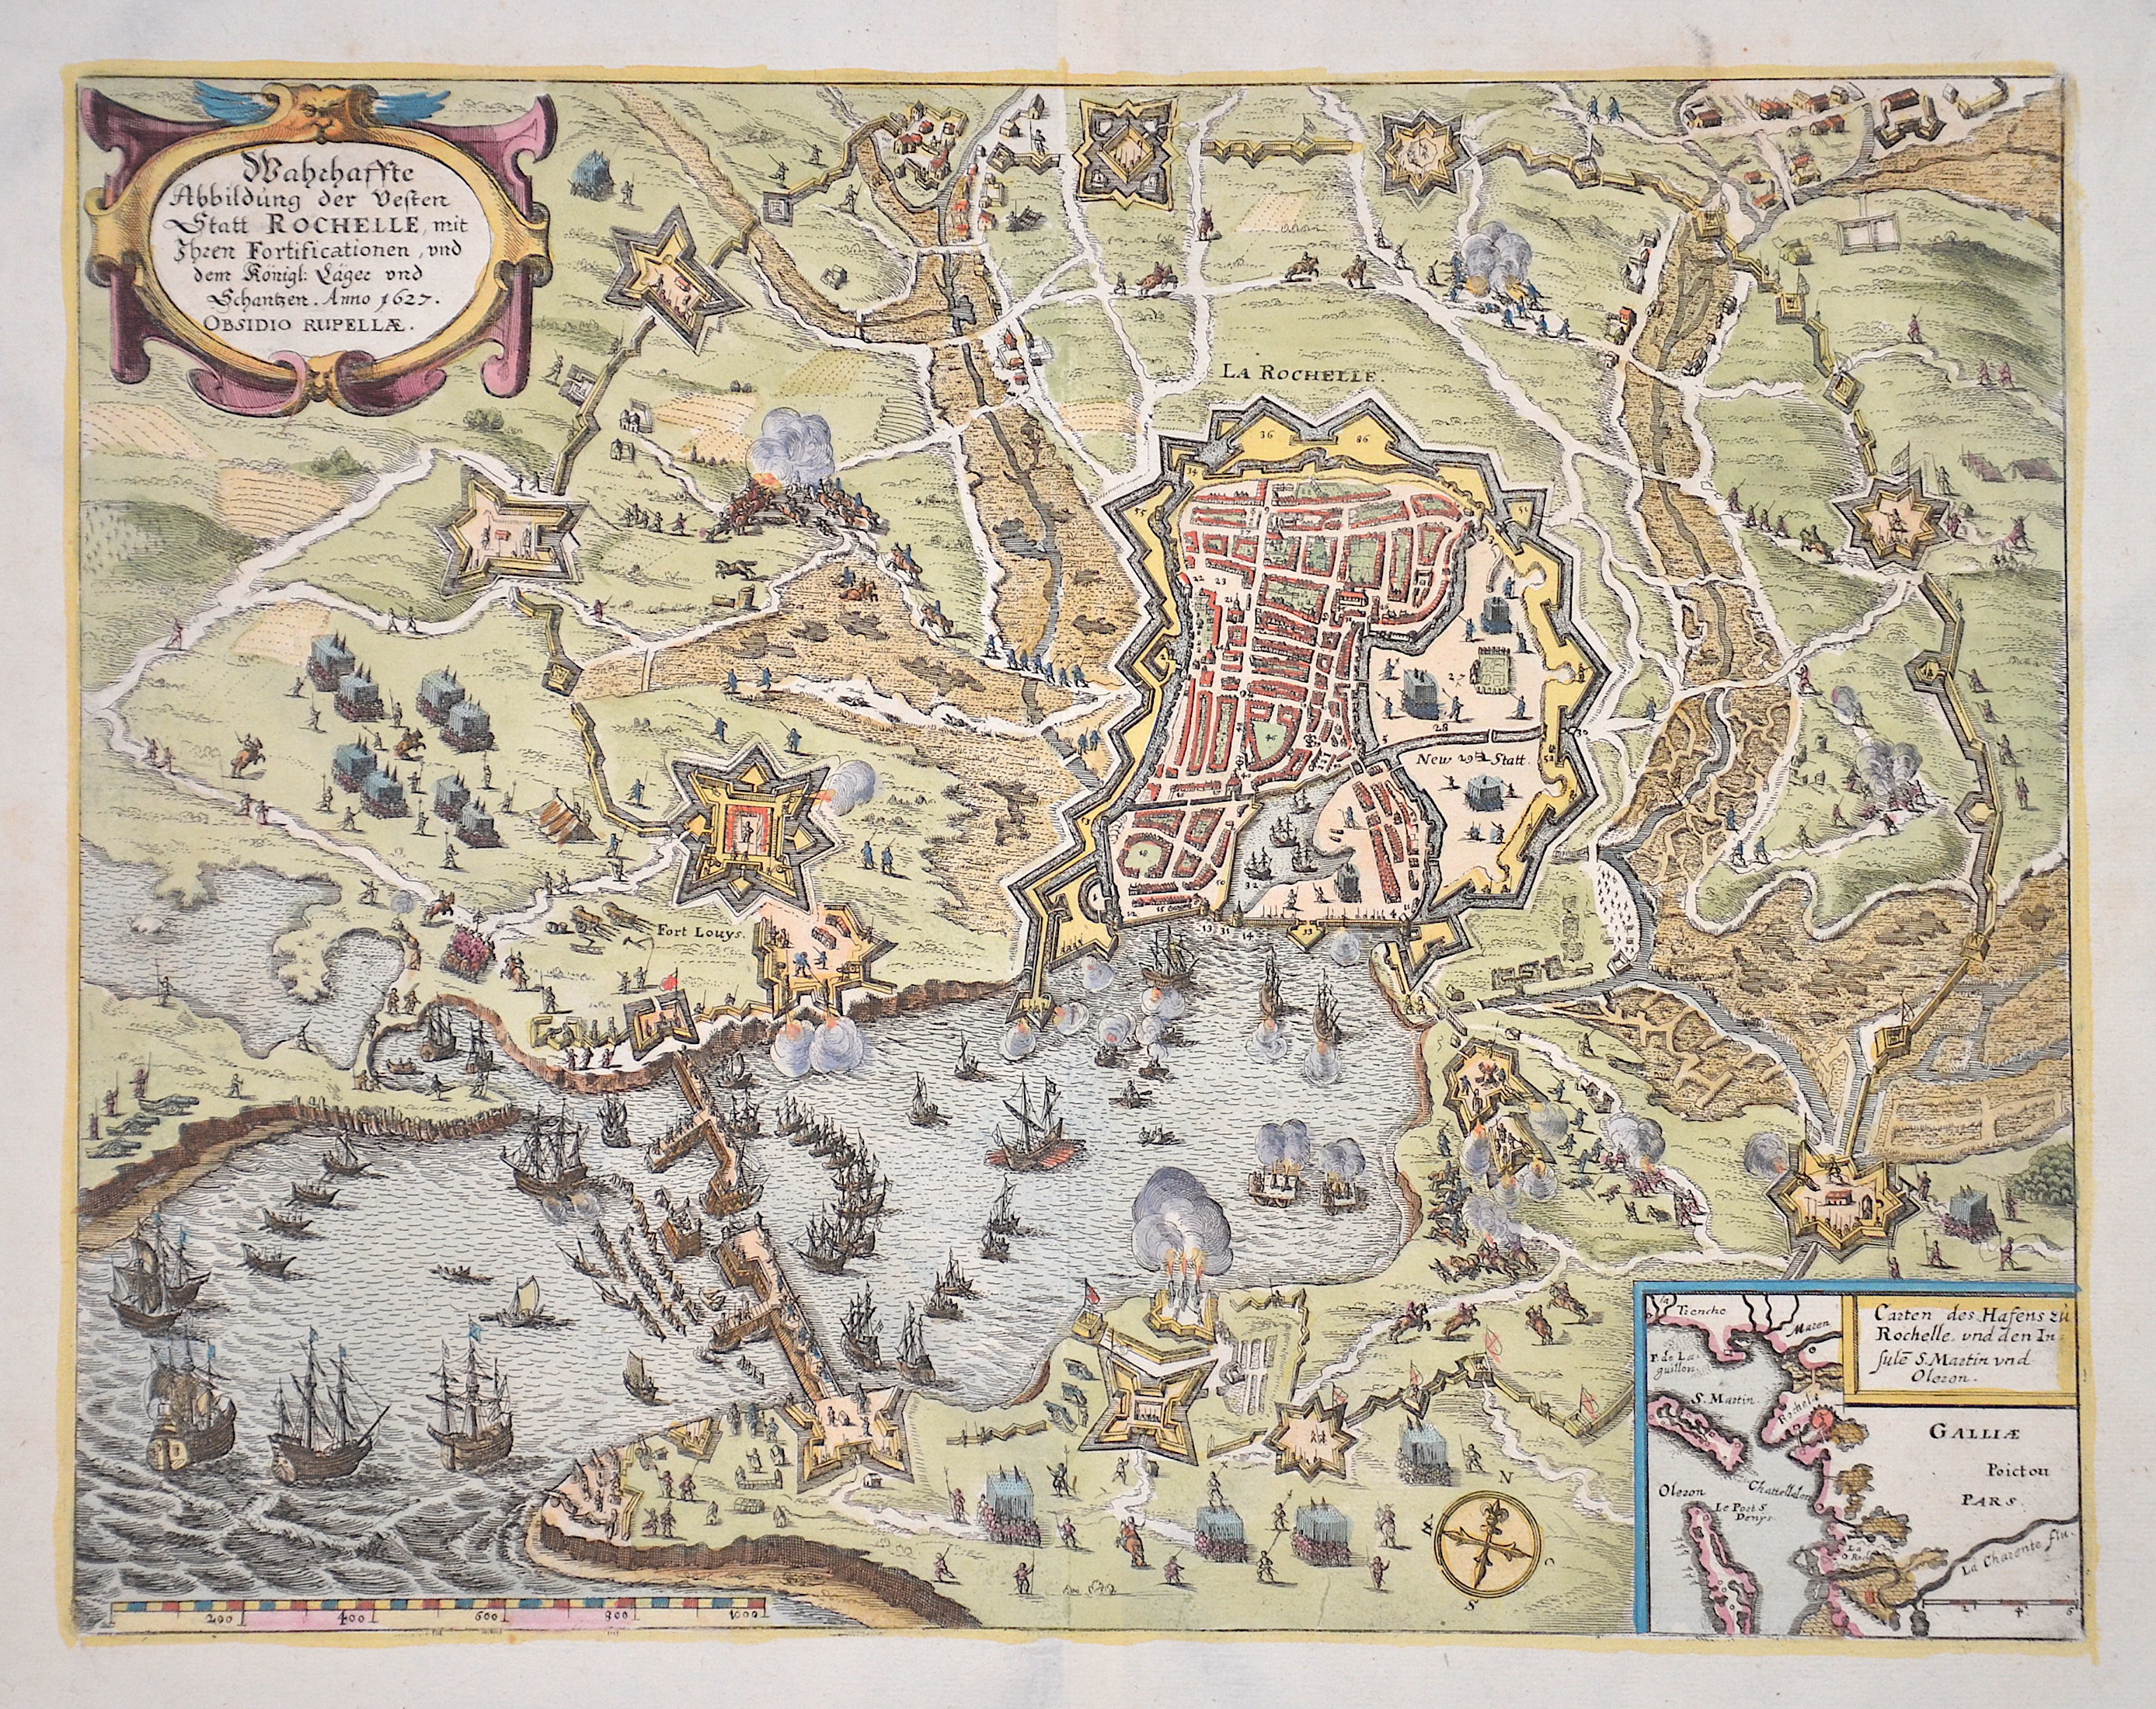 Merian  Wahrhafte Abbildung der Vesten Statt Rochelle, mit ihren Fortificationen, und dem Königl. Läger und Schantzen. Anno 1627